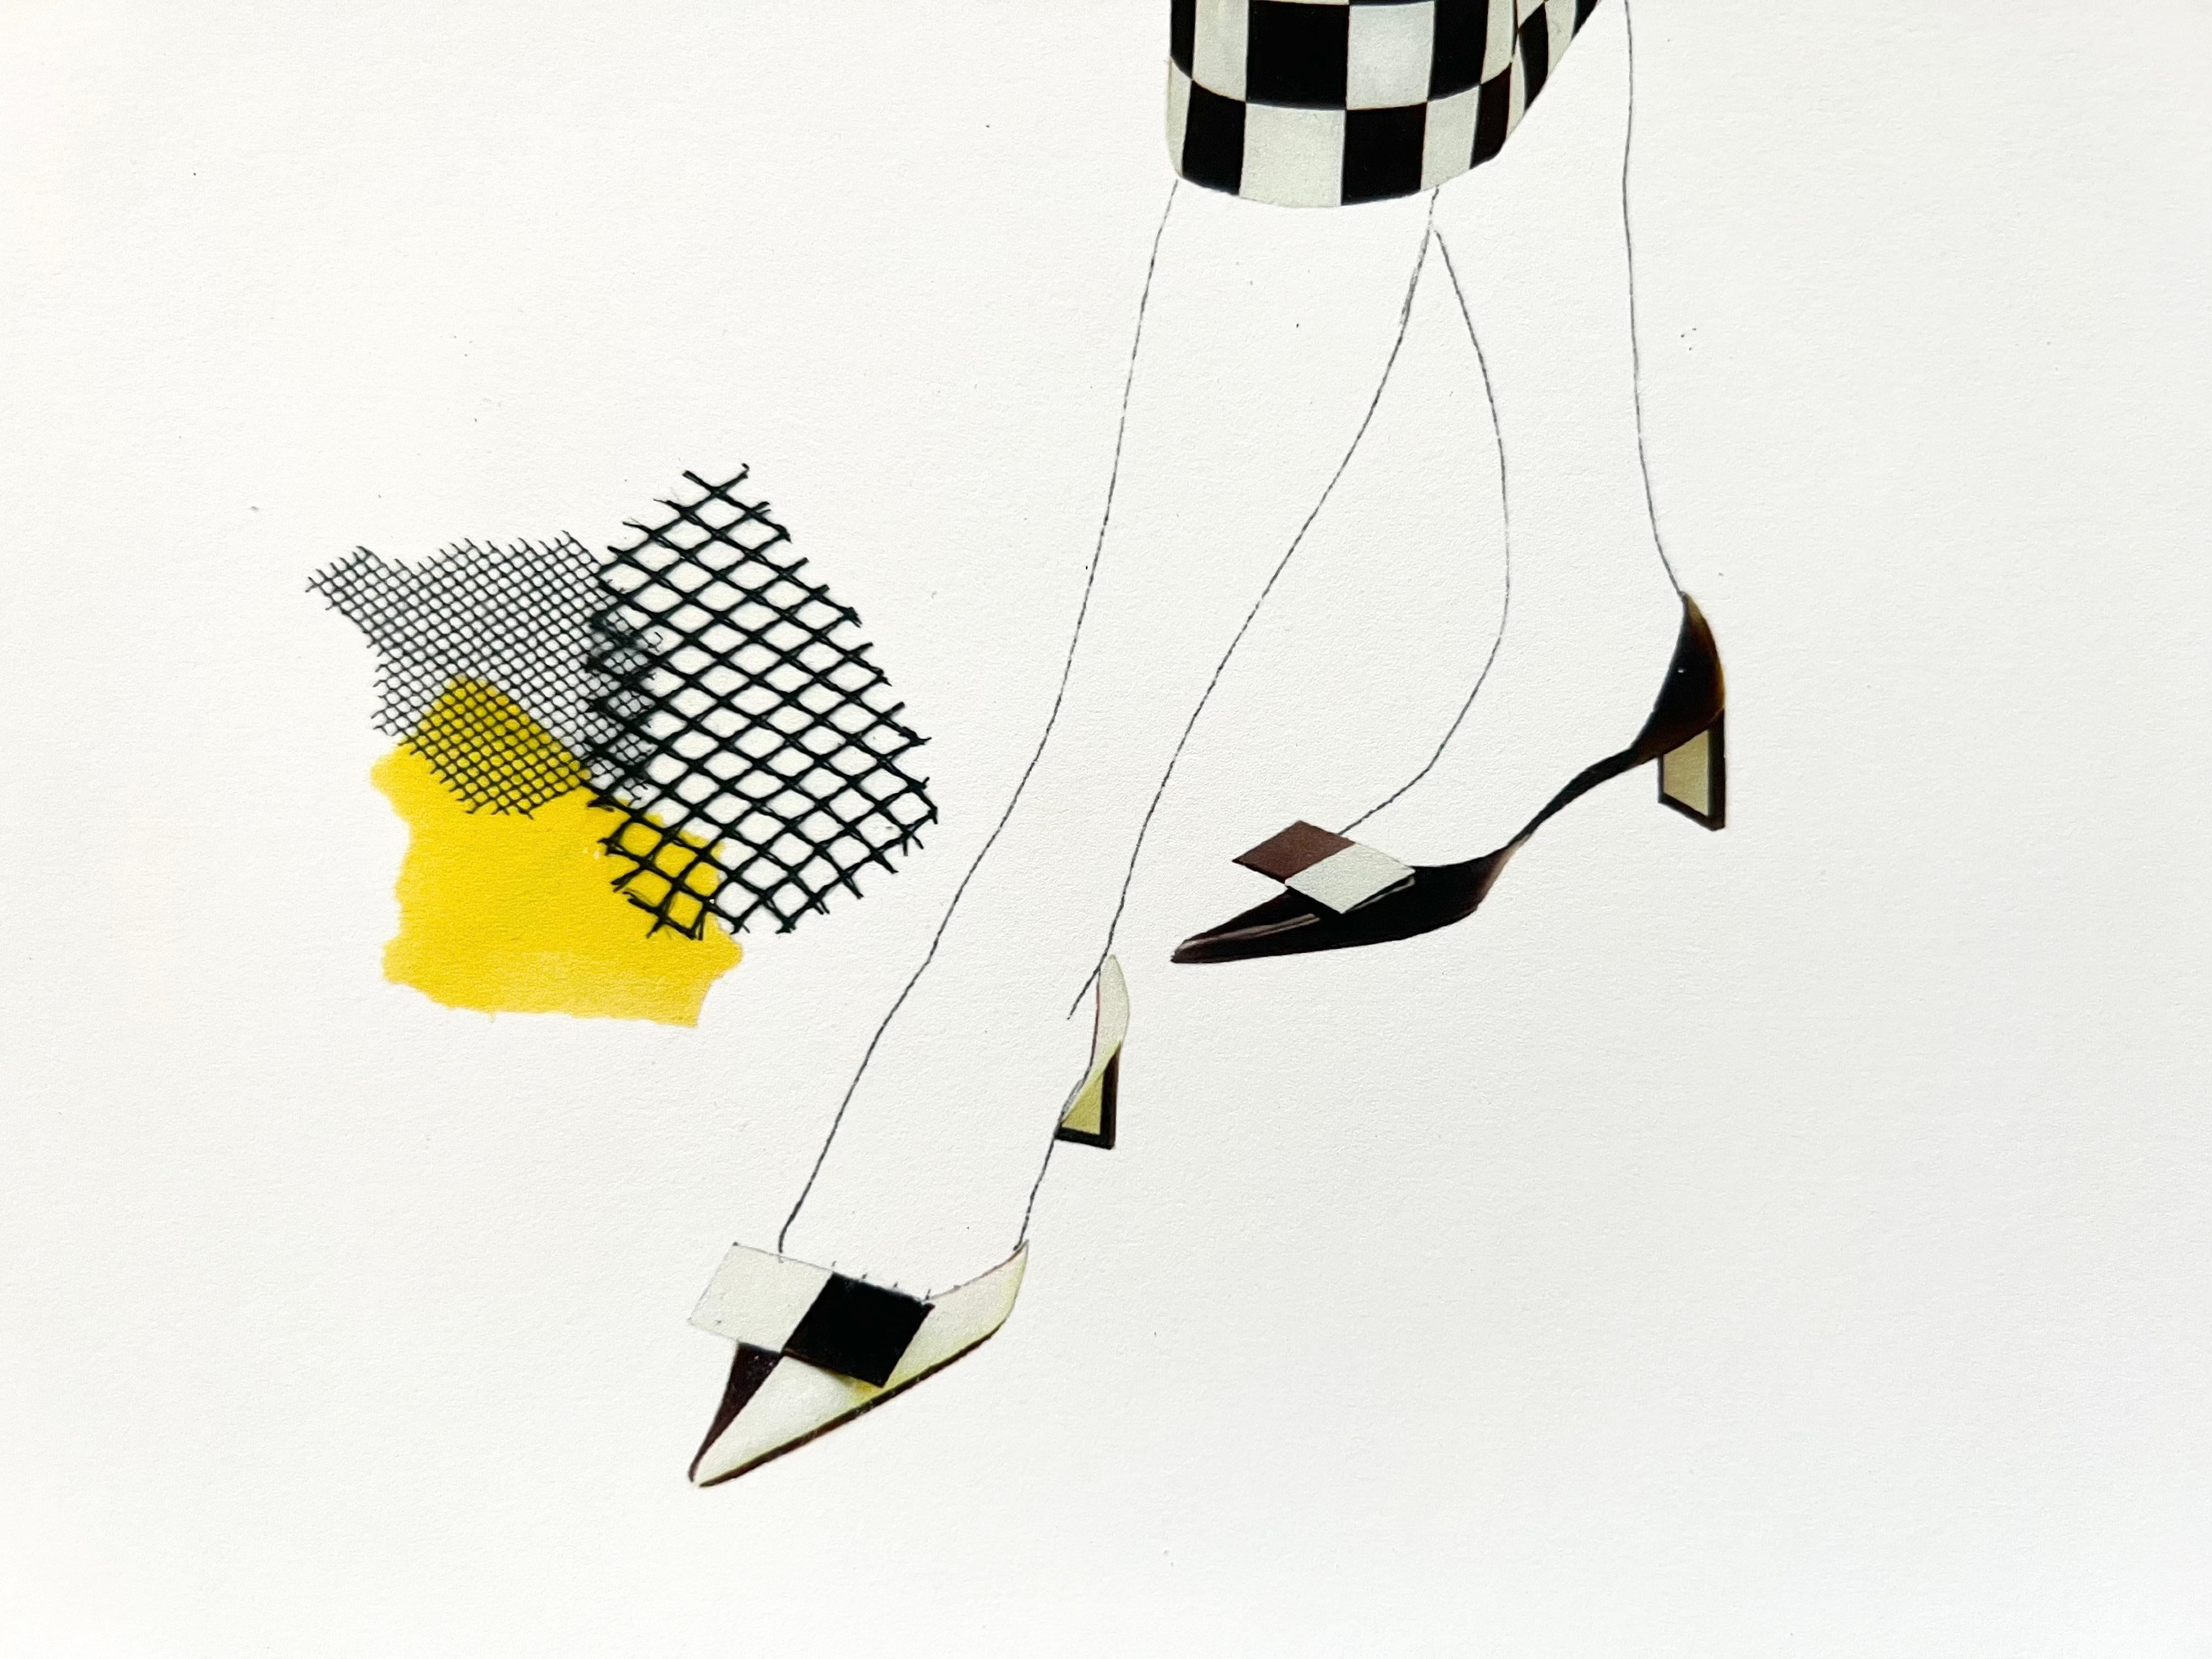 Eine Hommage an die Vintage-Mode von Dior. Eine Verschmelzung von digitaler Collage und handgezeichneten Linien verleiht diesem Kunstwerk einen unverwechselbaren Charakter und Individualität. Dieser einzigartige Giclée-Druck ist eine hochwertige